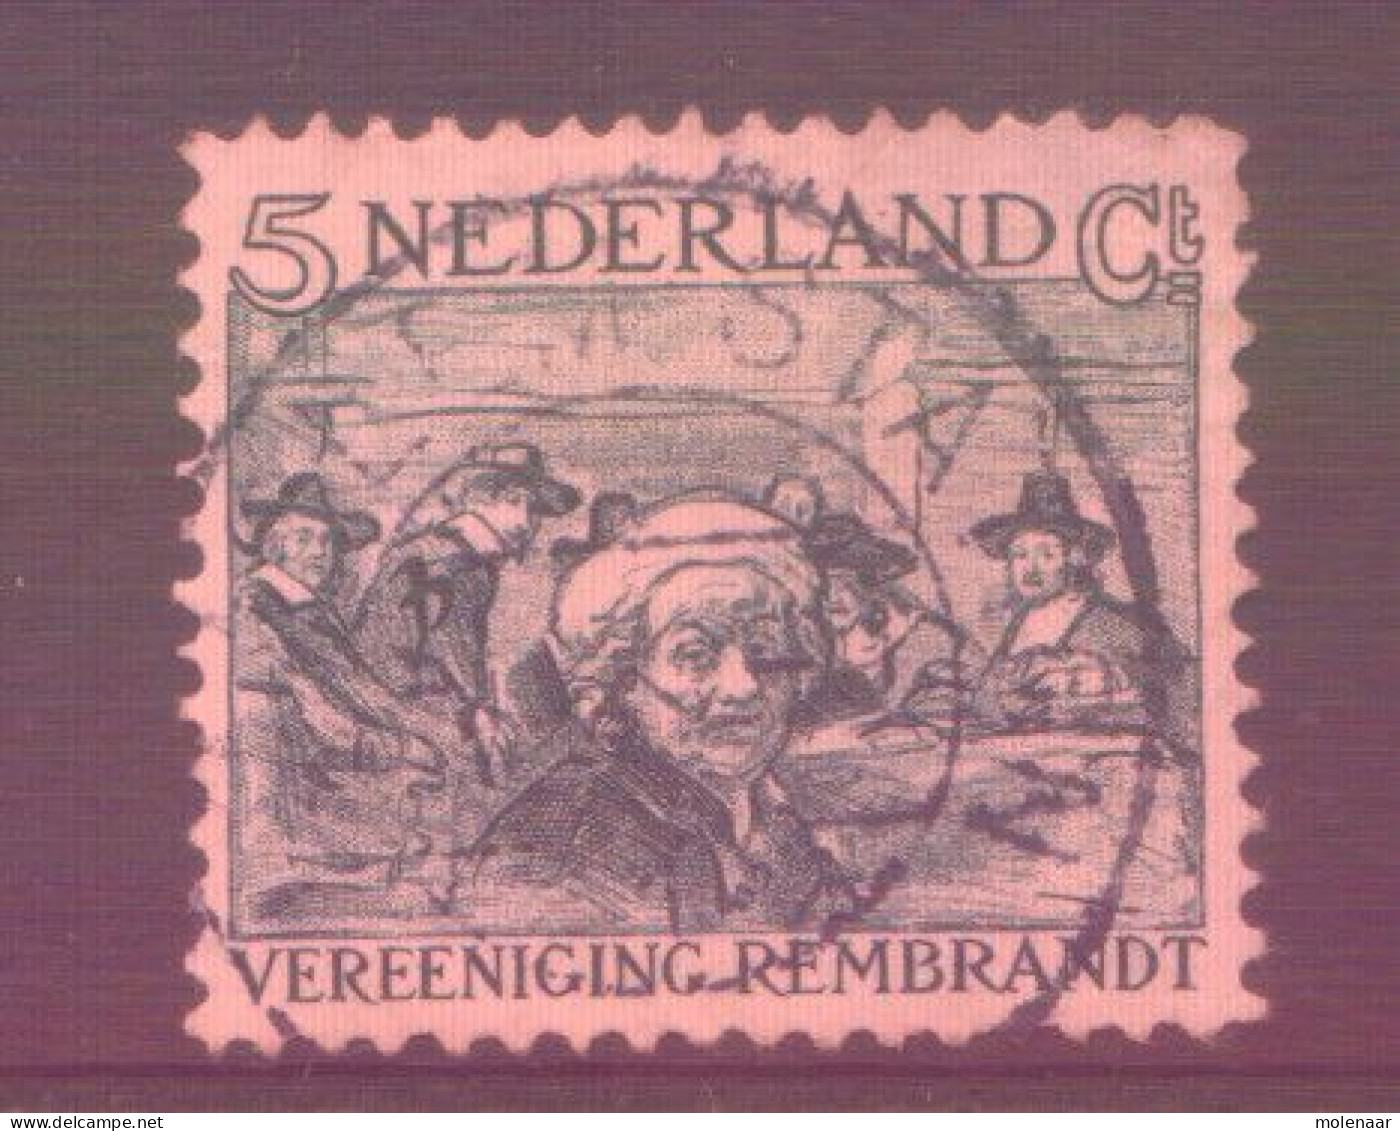 Postzegels > Europa > Nederland > Periode 1891-1948 (Wilhelmina) > 1891-1909 > 229 Gebruikt (11761) - Gebruikt